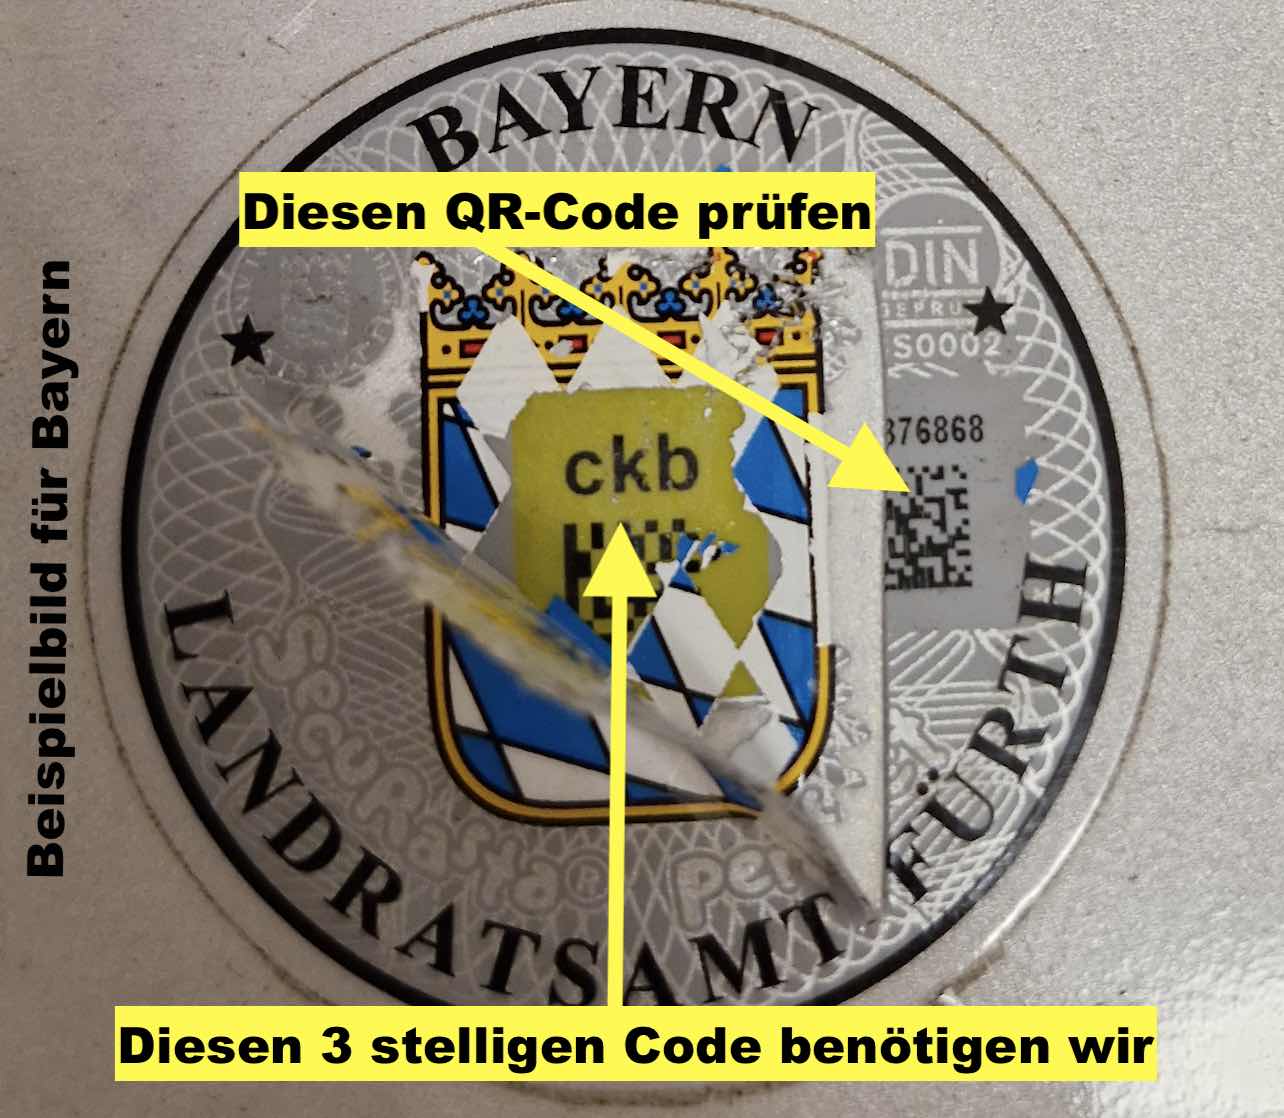 Beispielbild eines Kennzeichensiegels mit einem QR-Code aus Bayern